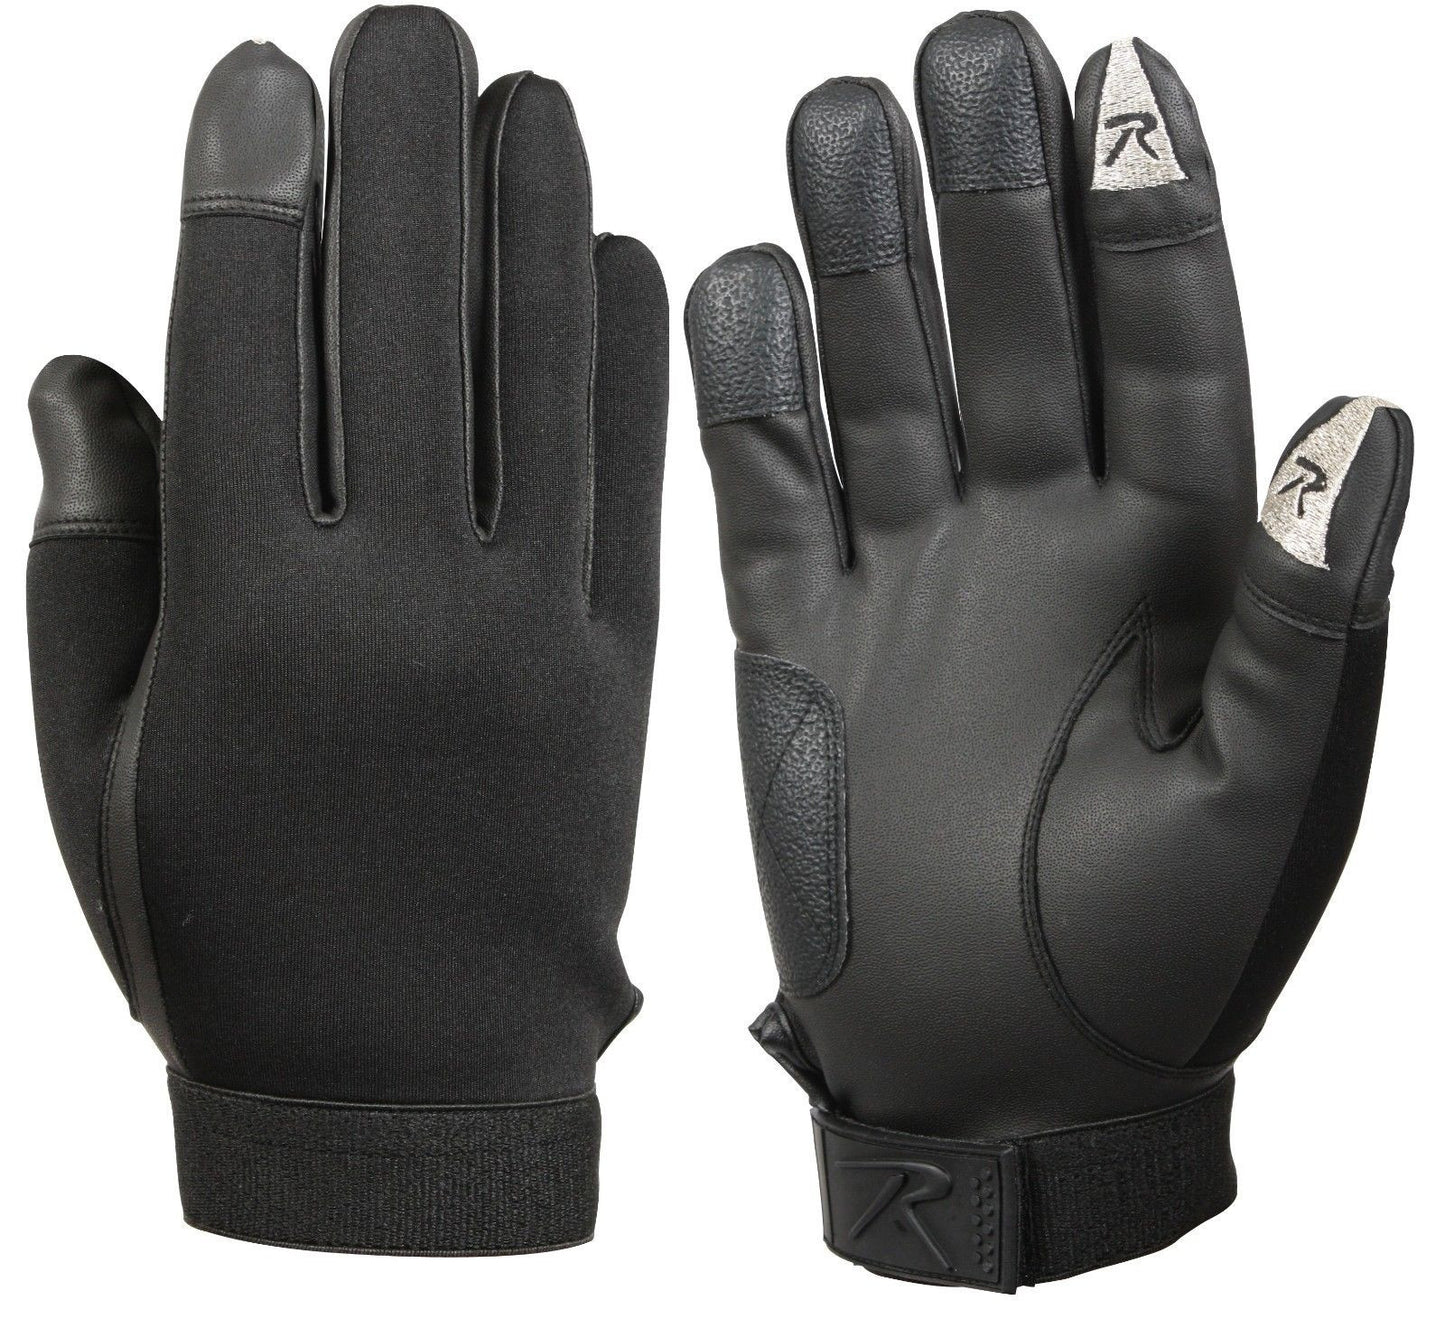 Rothco Touch Screen Neoprene Duty Gloves - Black